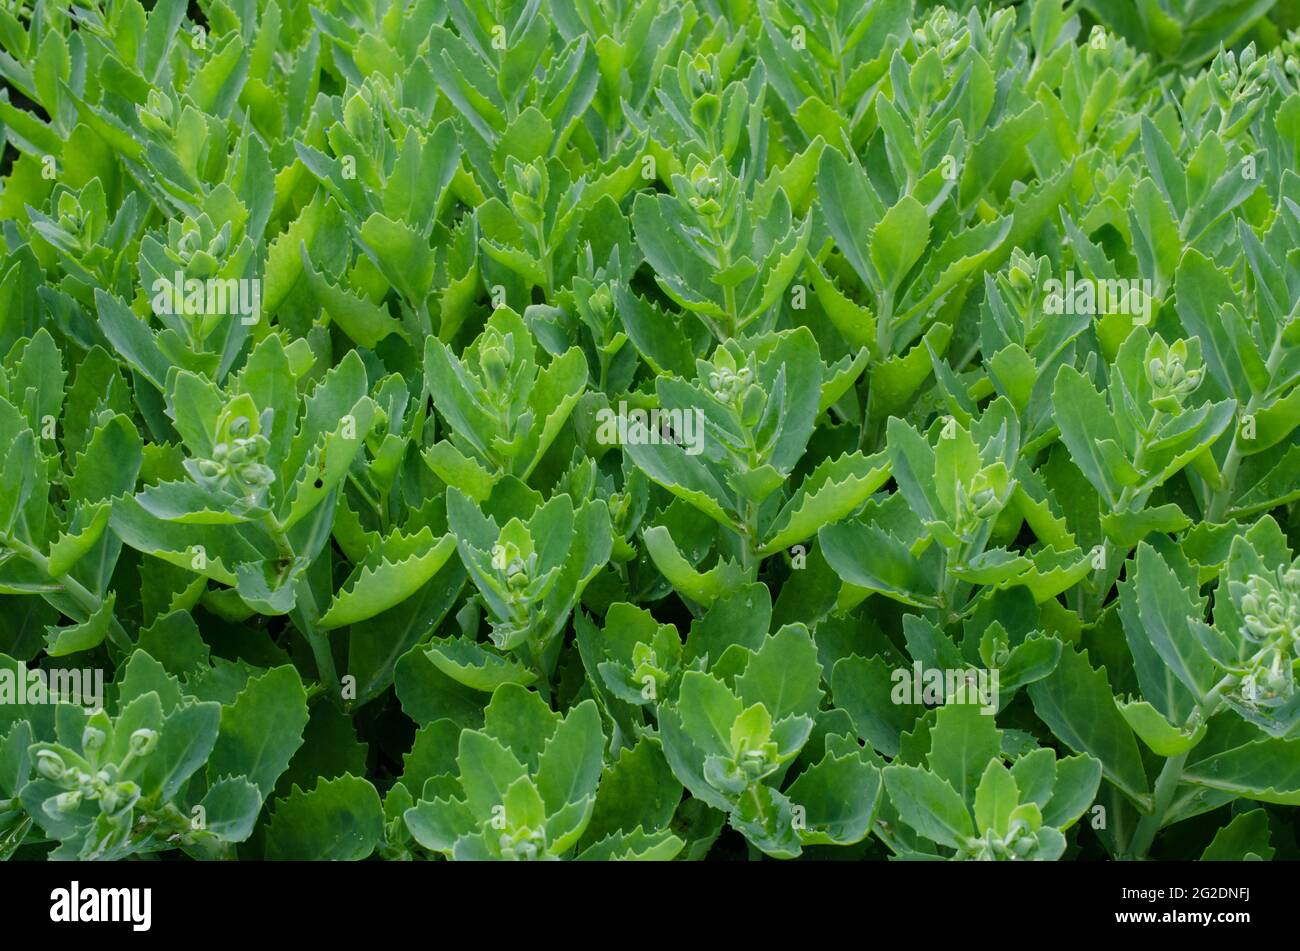 Perennial flower - ochitnik, Hylotelephium spectabile. Blooming cultivar Stock Photo